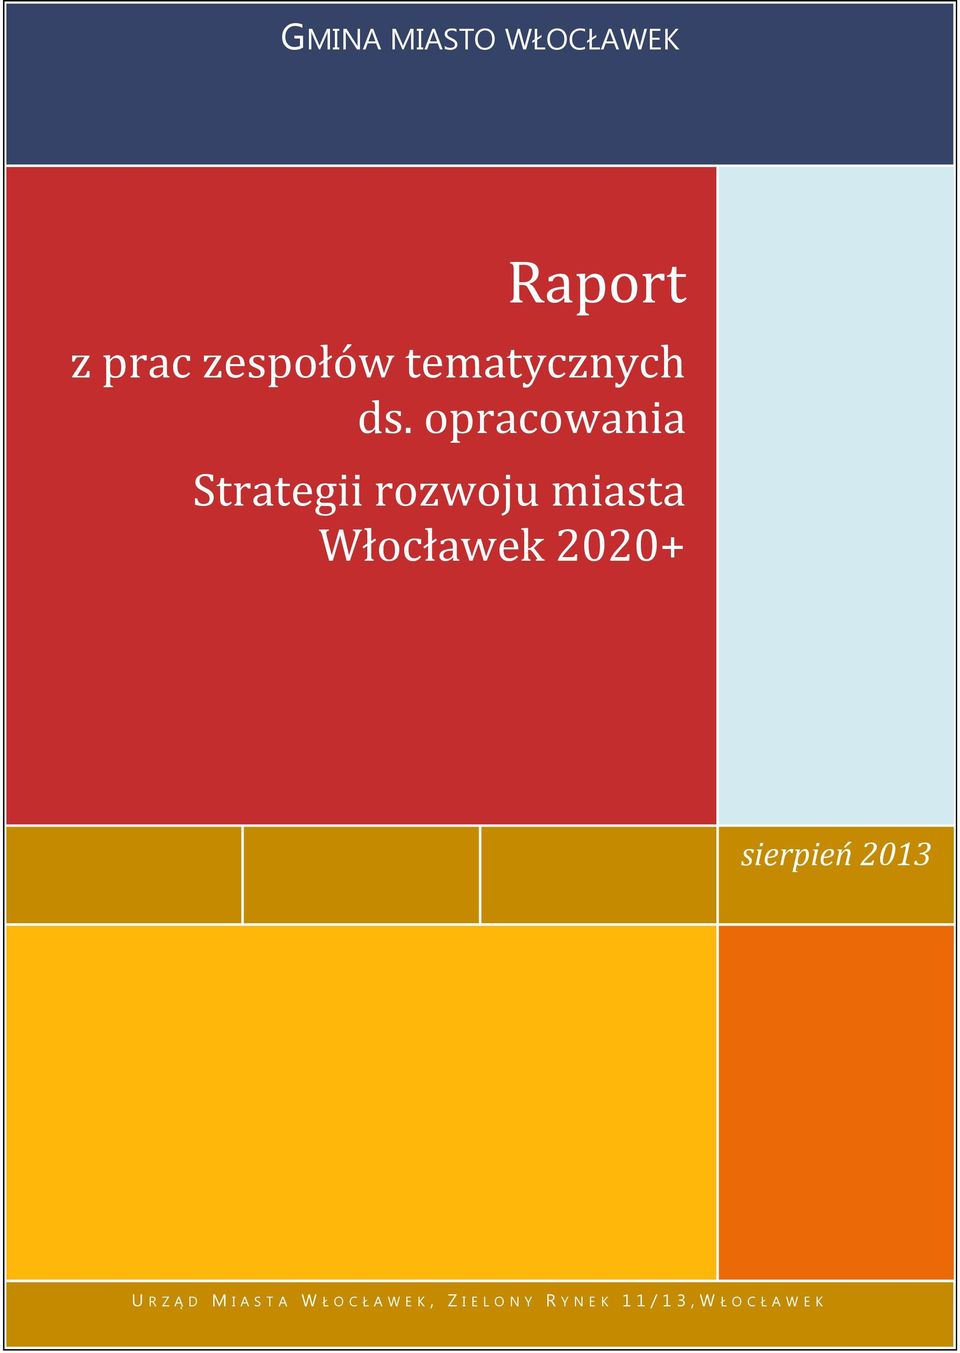 opracowania Strategii rozwoju miasta Włocławek 2020+